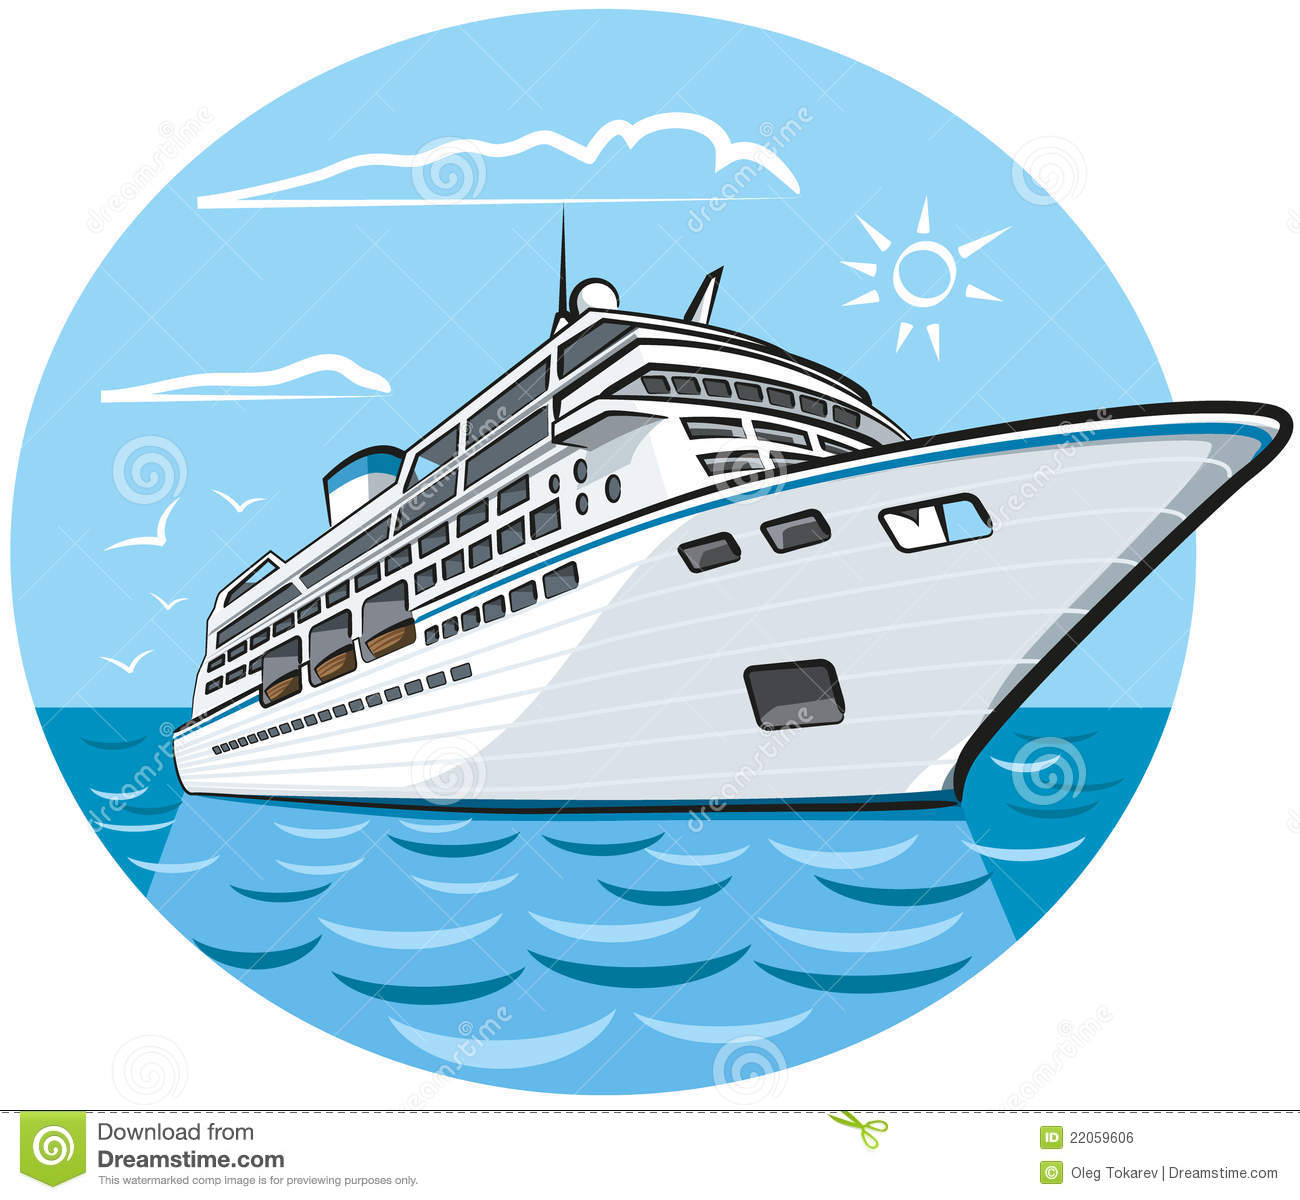 Luxury Cruise Ship Royalty Free Stock Image   Image  22059606